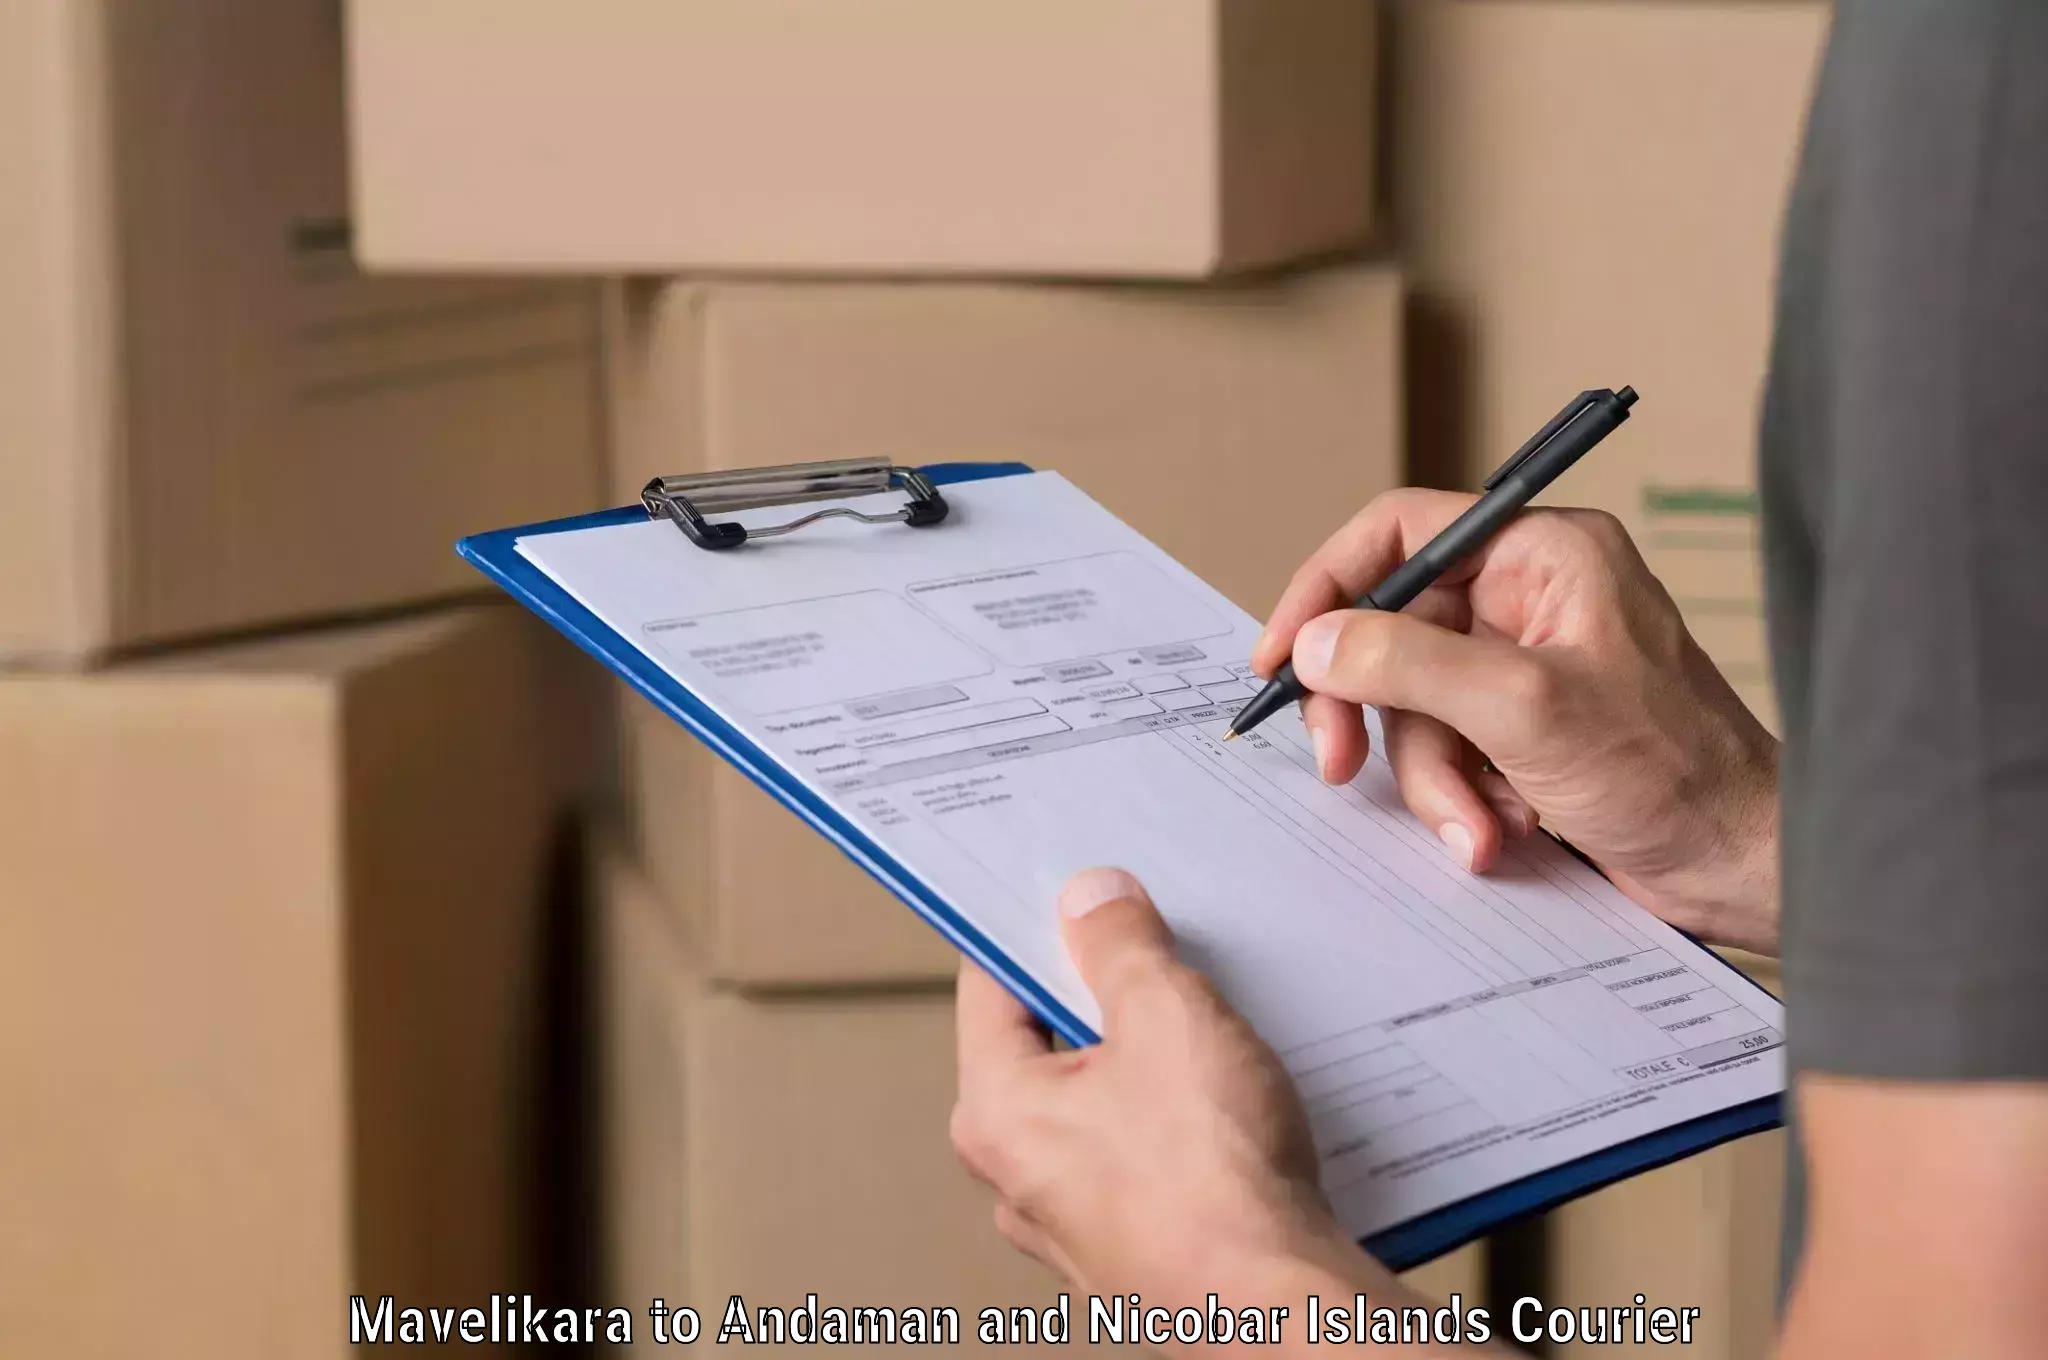 Custom courier packaging in Mavelikara to Port Blair